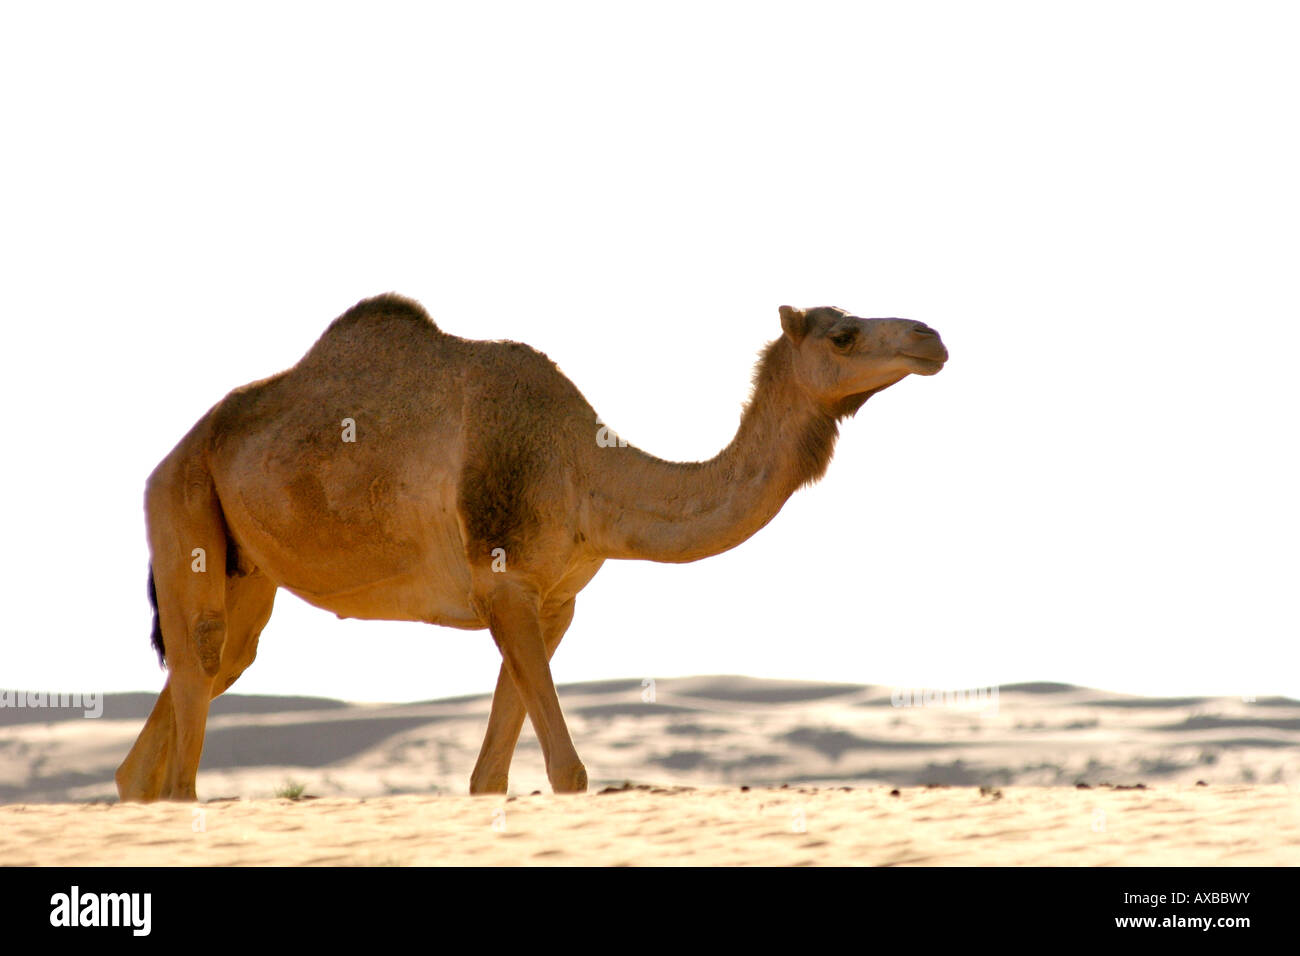 Un chameau d'Arabie, alias le dromadaire à une bosse (Camelus dromedarius) dans la région de Wahiba Sands en Oman. Banque D'Images